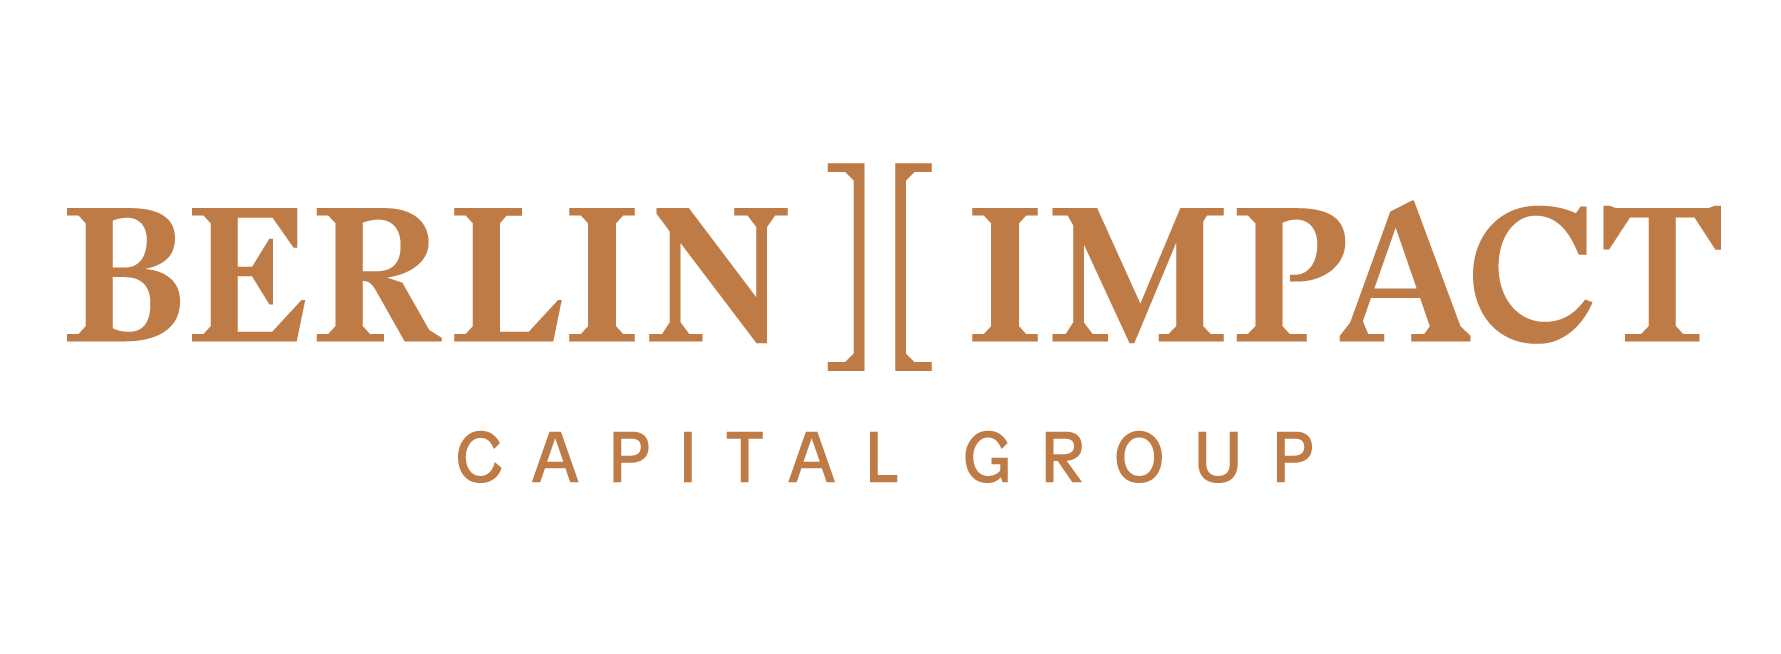 Berlin Impact Capital Group